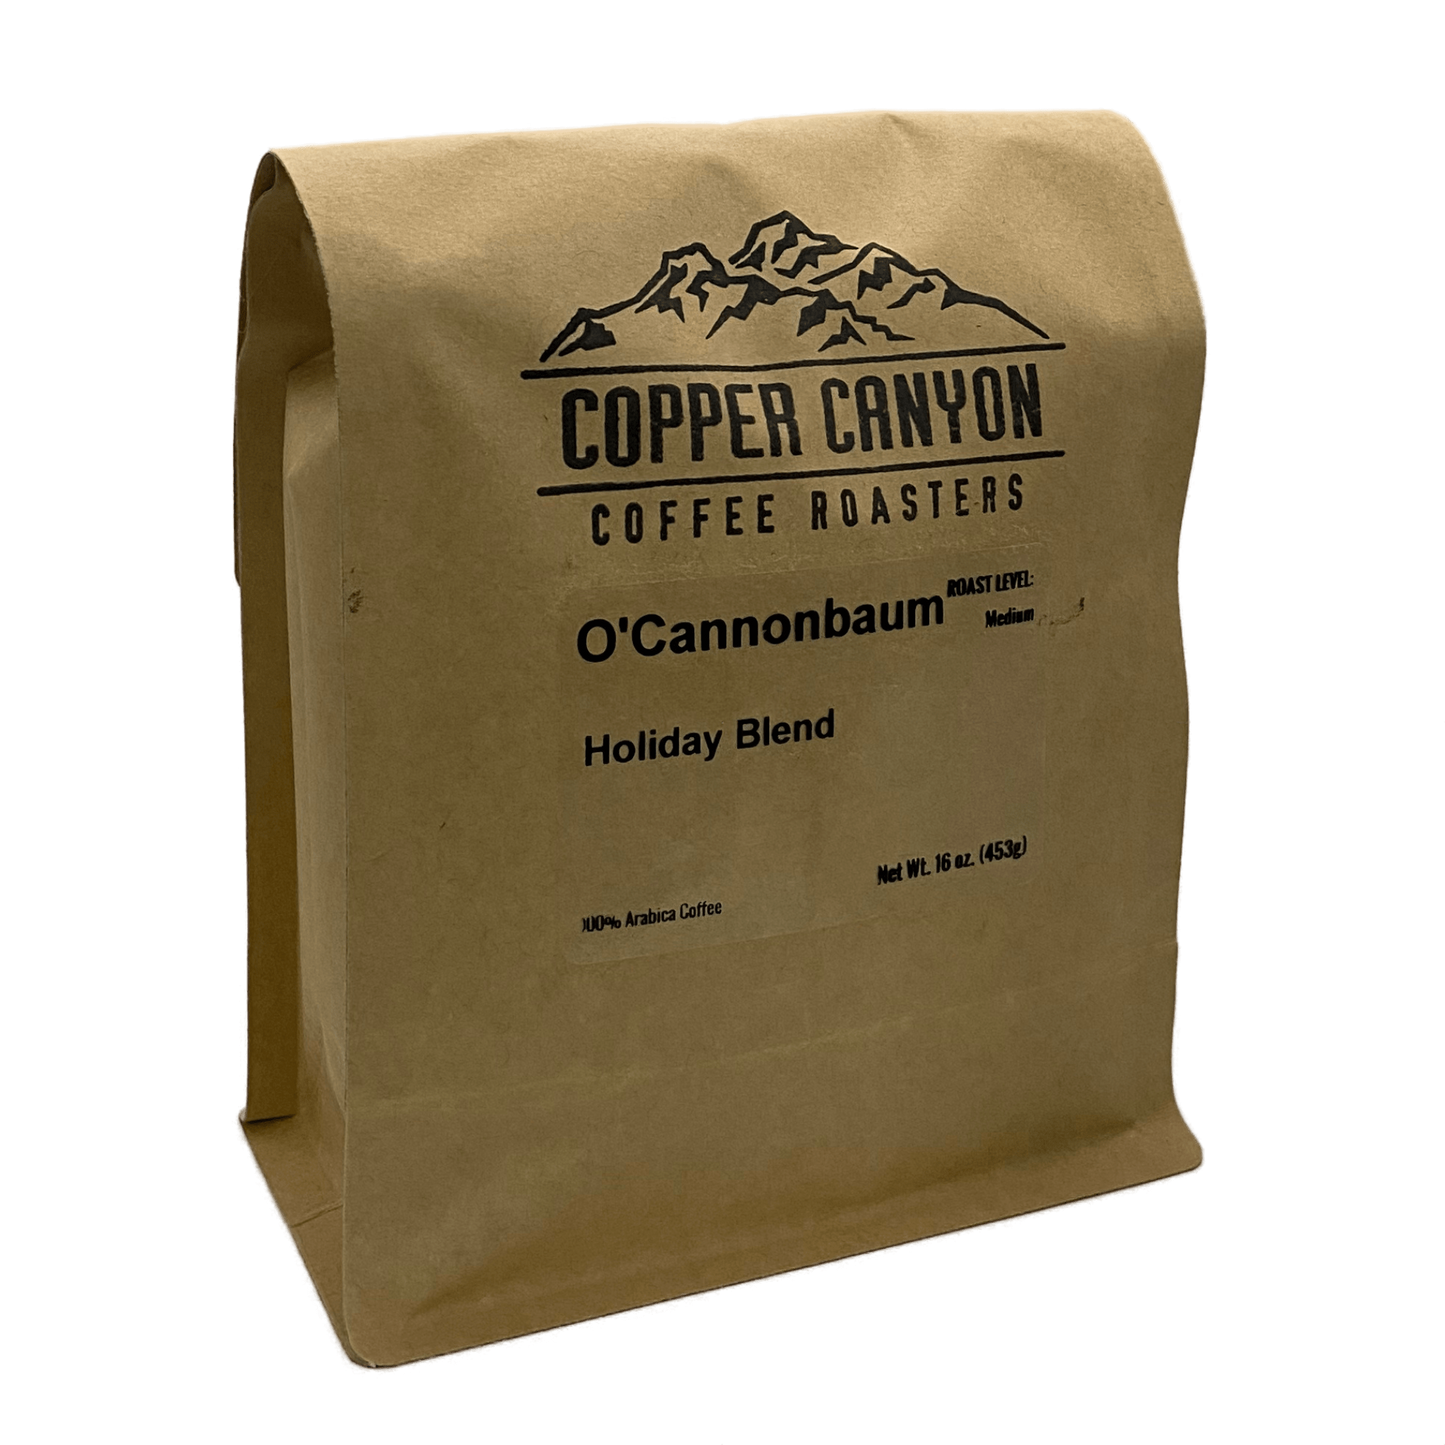 16 oz bag of O'CannonBaum Holiday Blend, dark roast coffee